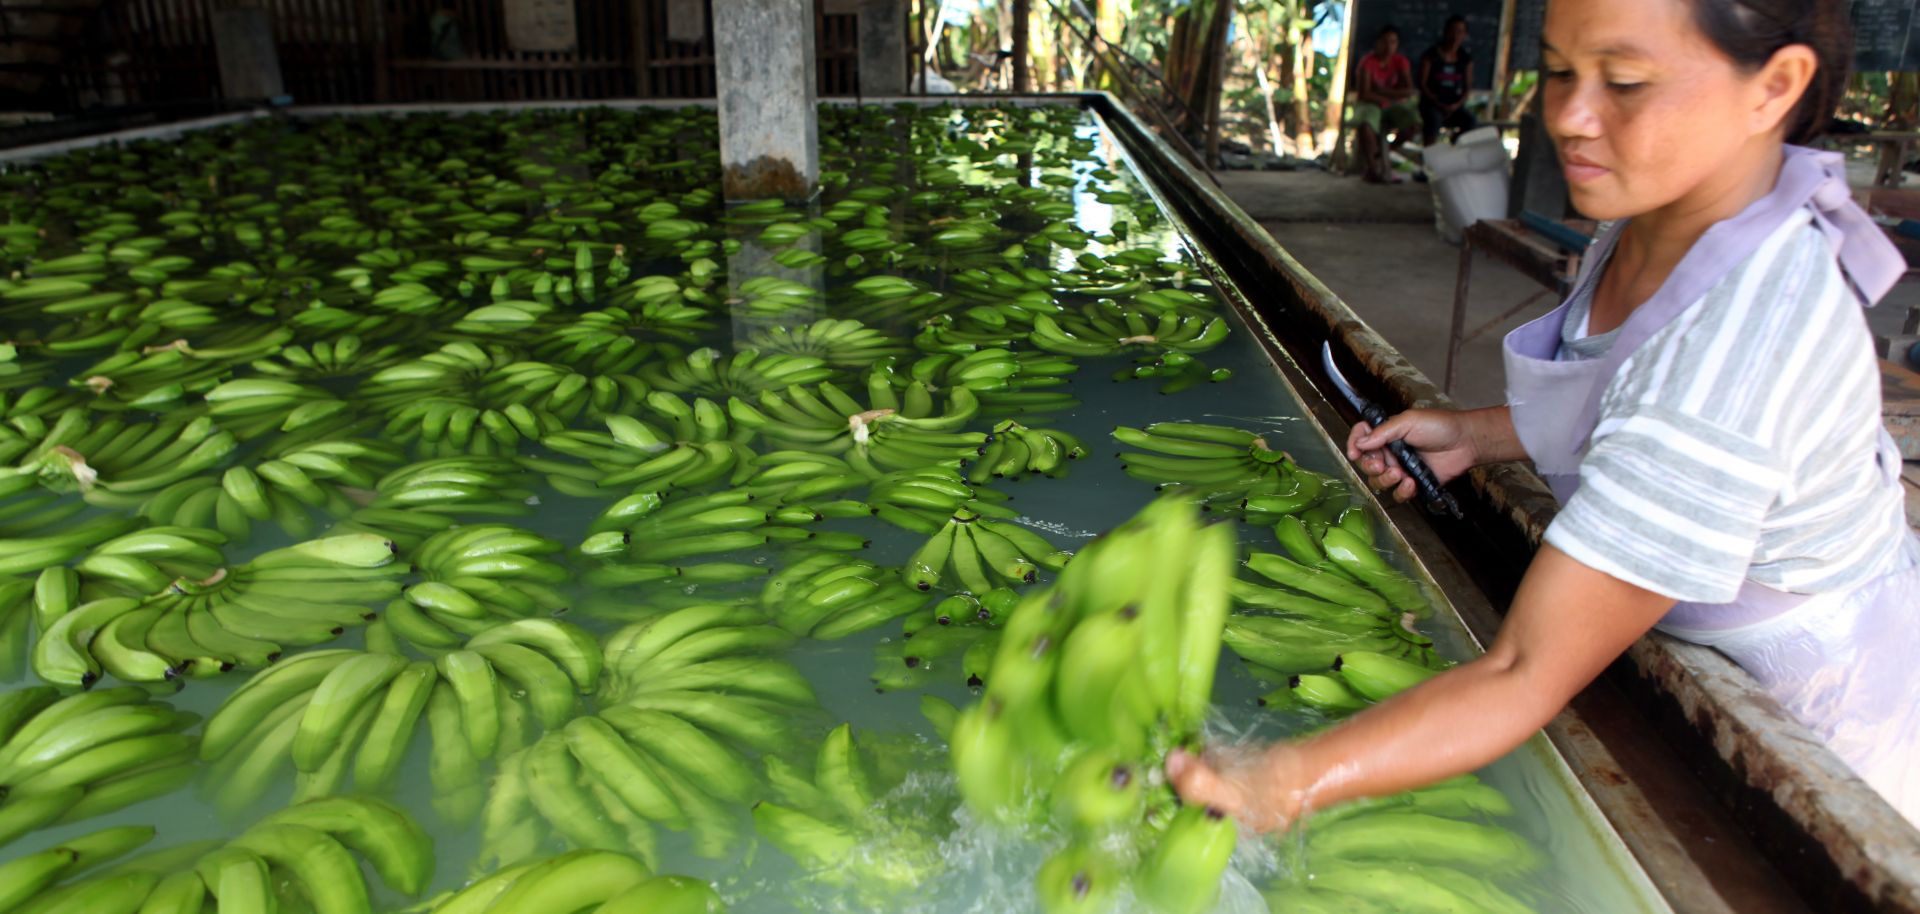 A Filipino worker processes bananas at a banana processing facility.